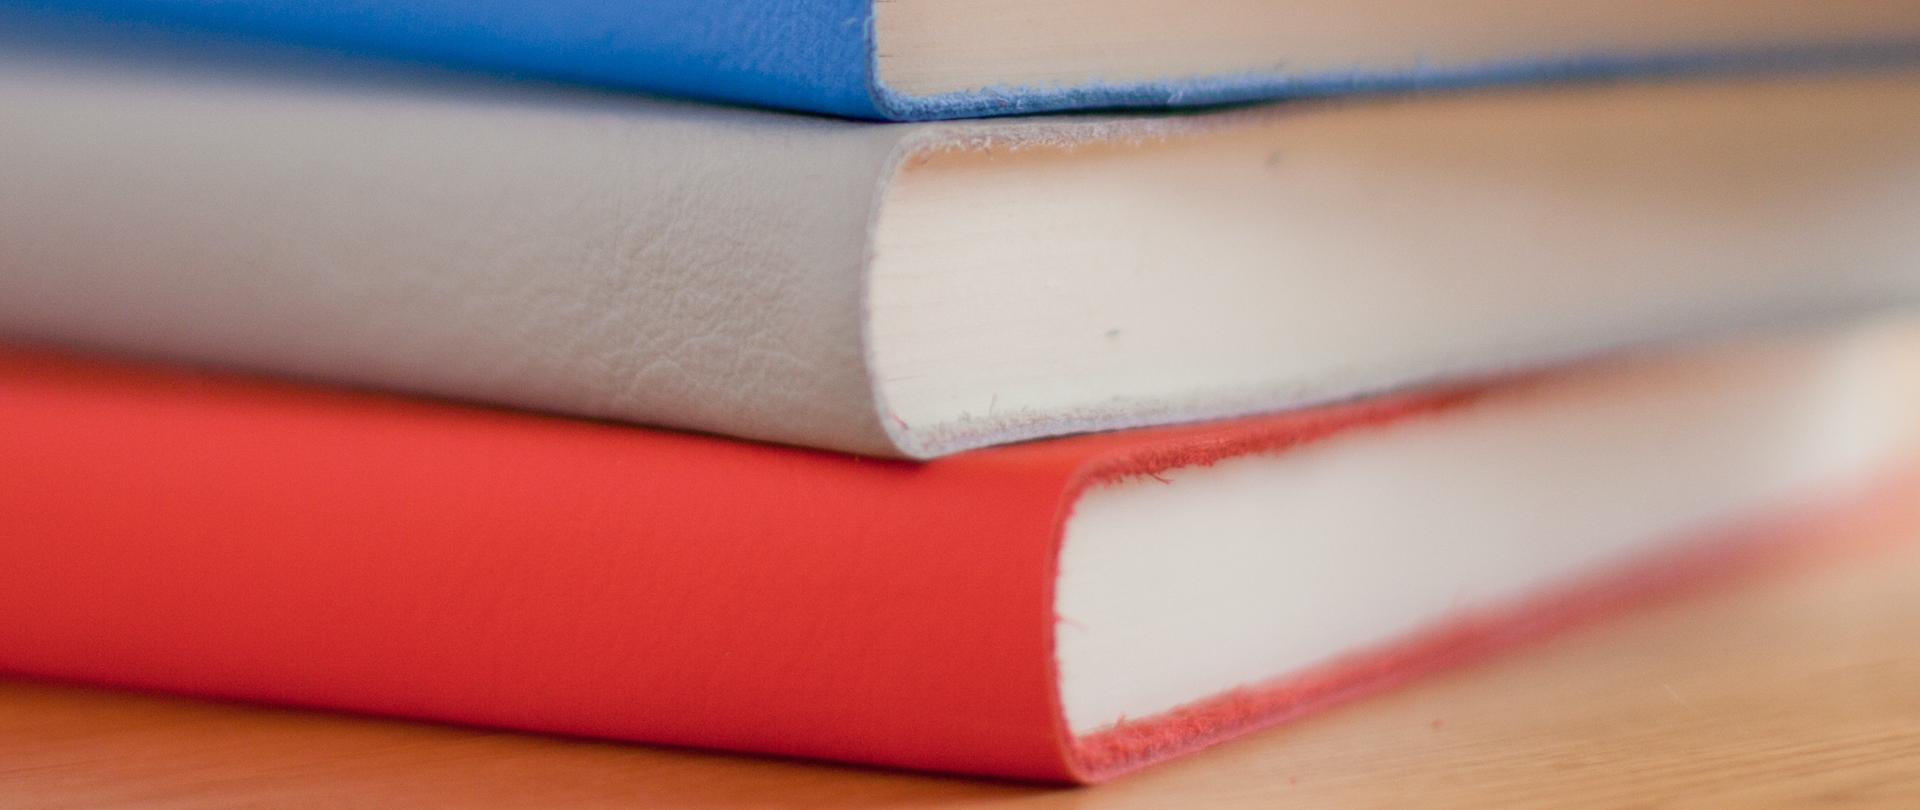 Stos kolorowych książek leży na blacie.